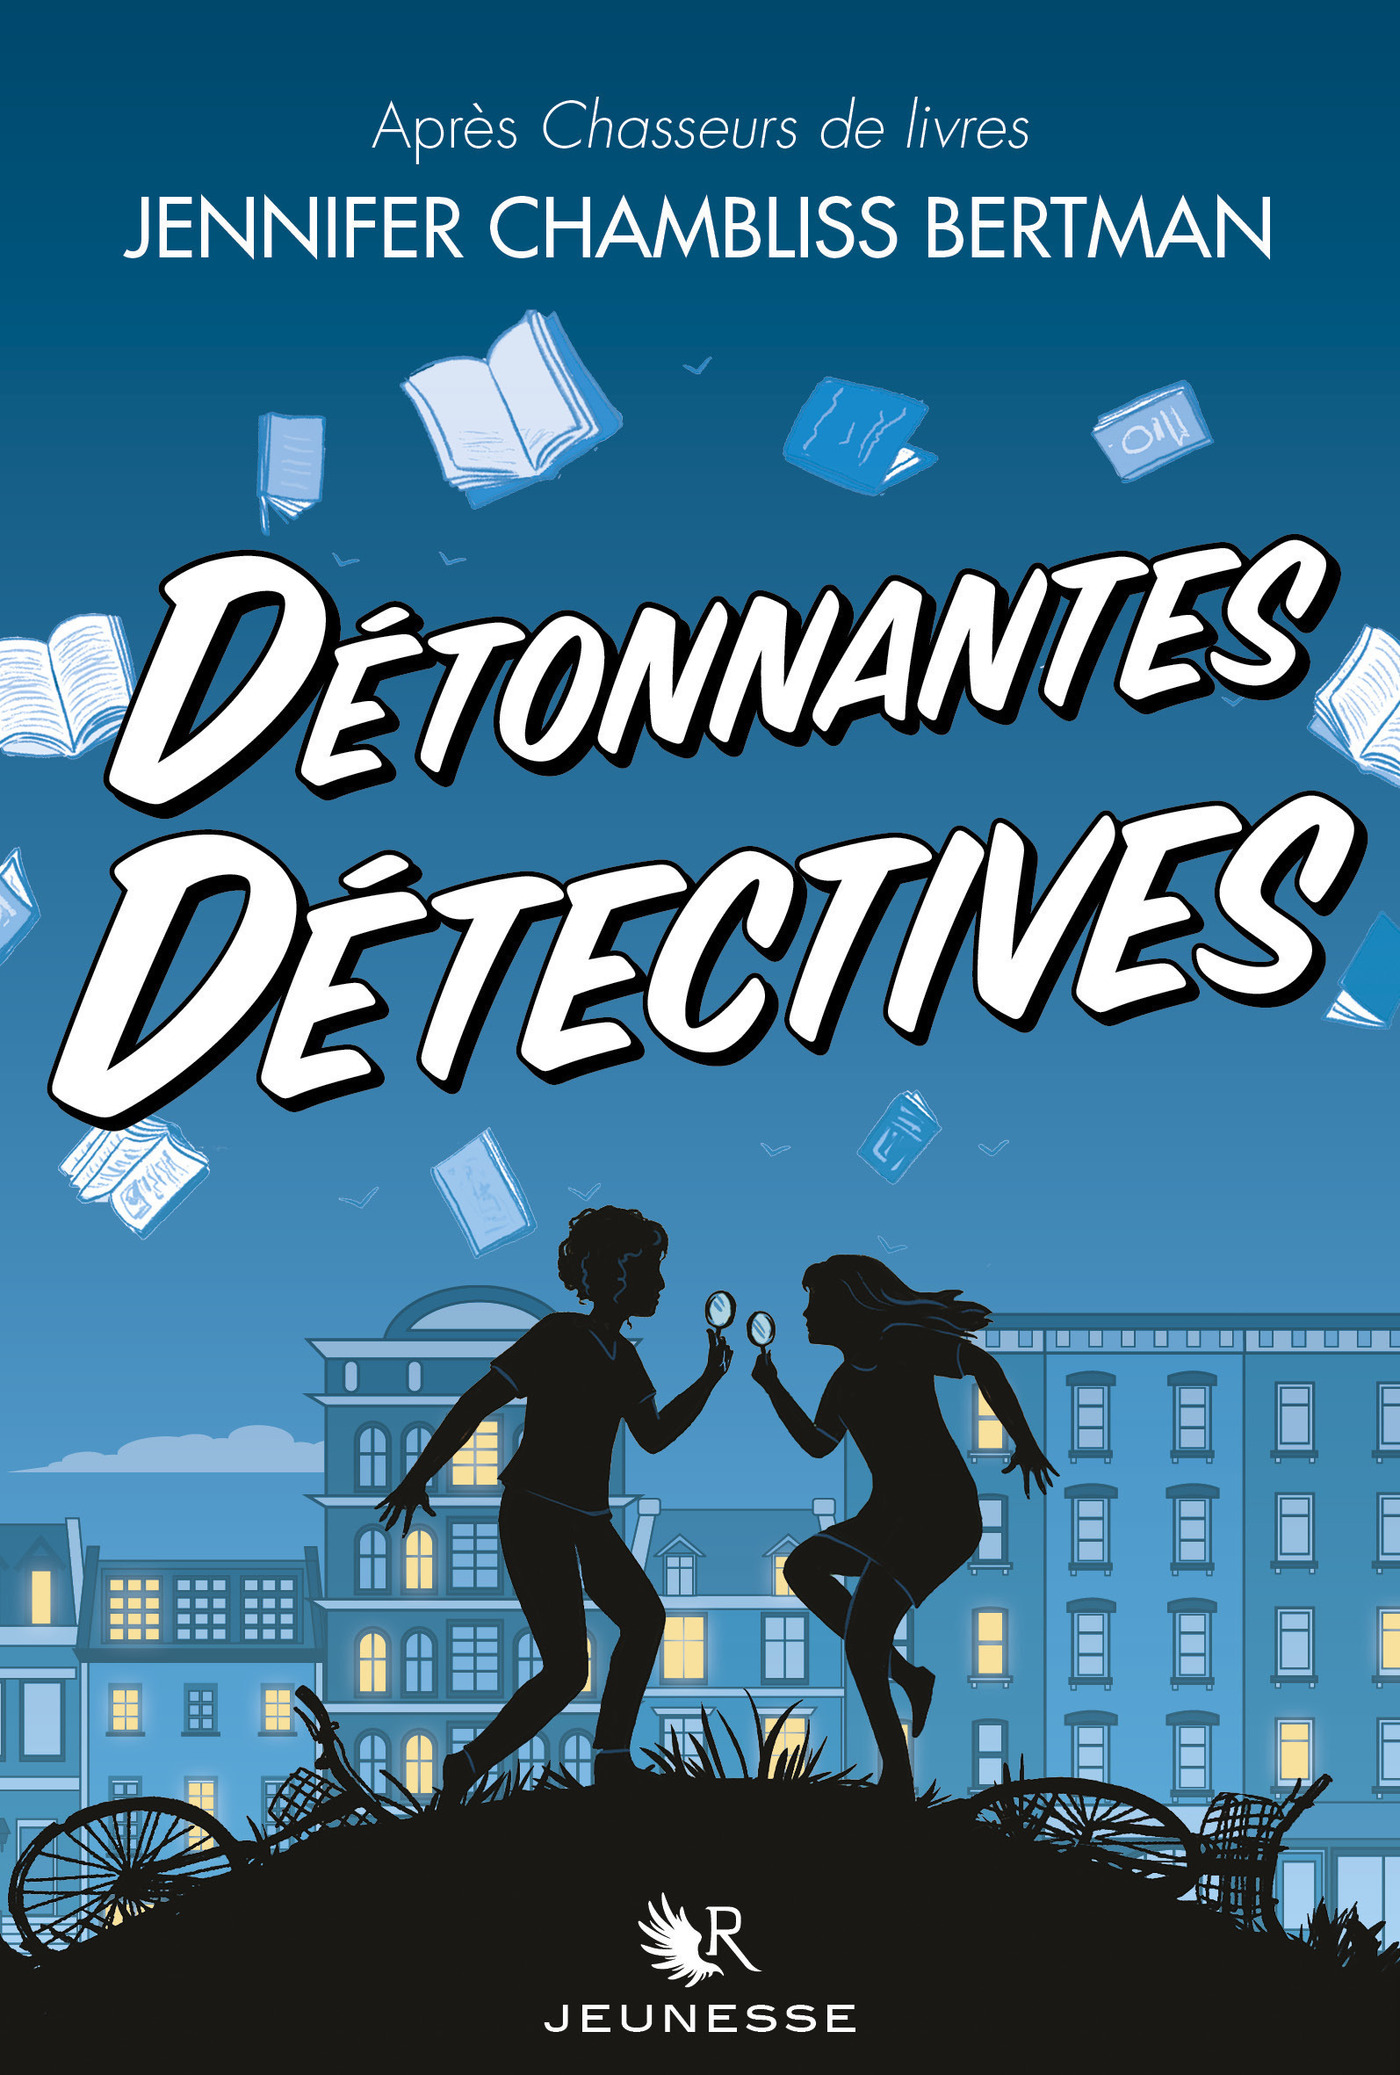 Afficher "Détonnantes détectives"